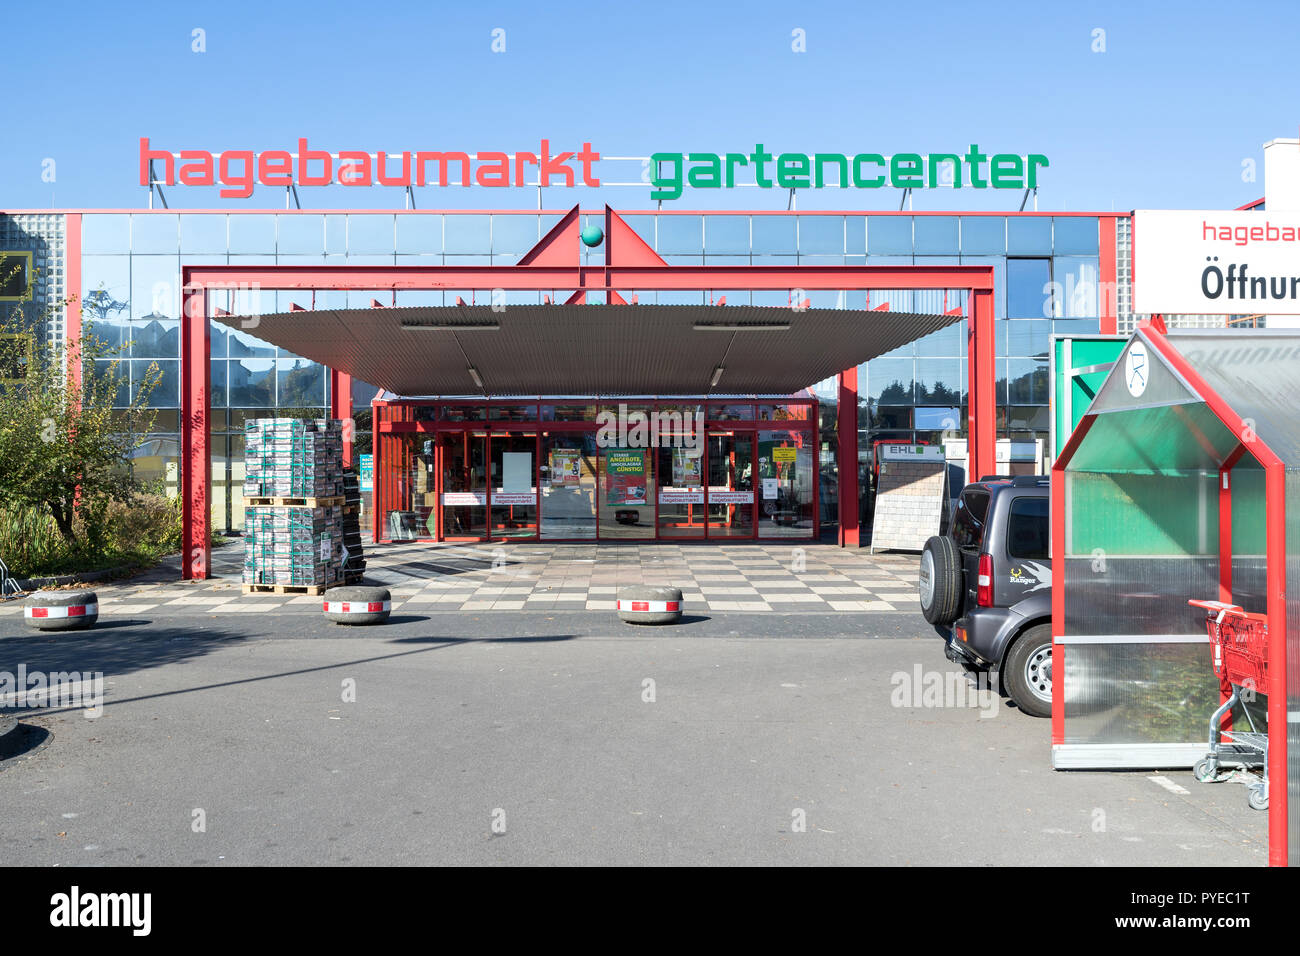 Hardware Hagebaumarkt negozio con giardino centro. Hagebaumarkt è un tedesco DIY-catena di negozi che offrono home improvement e fai-da-te le merci. Foto Stock